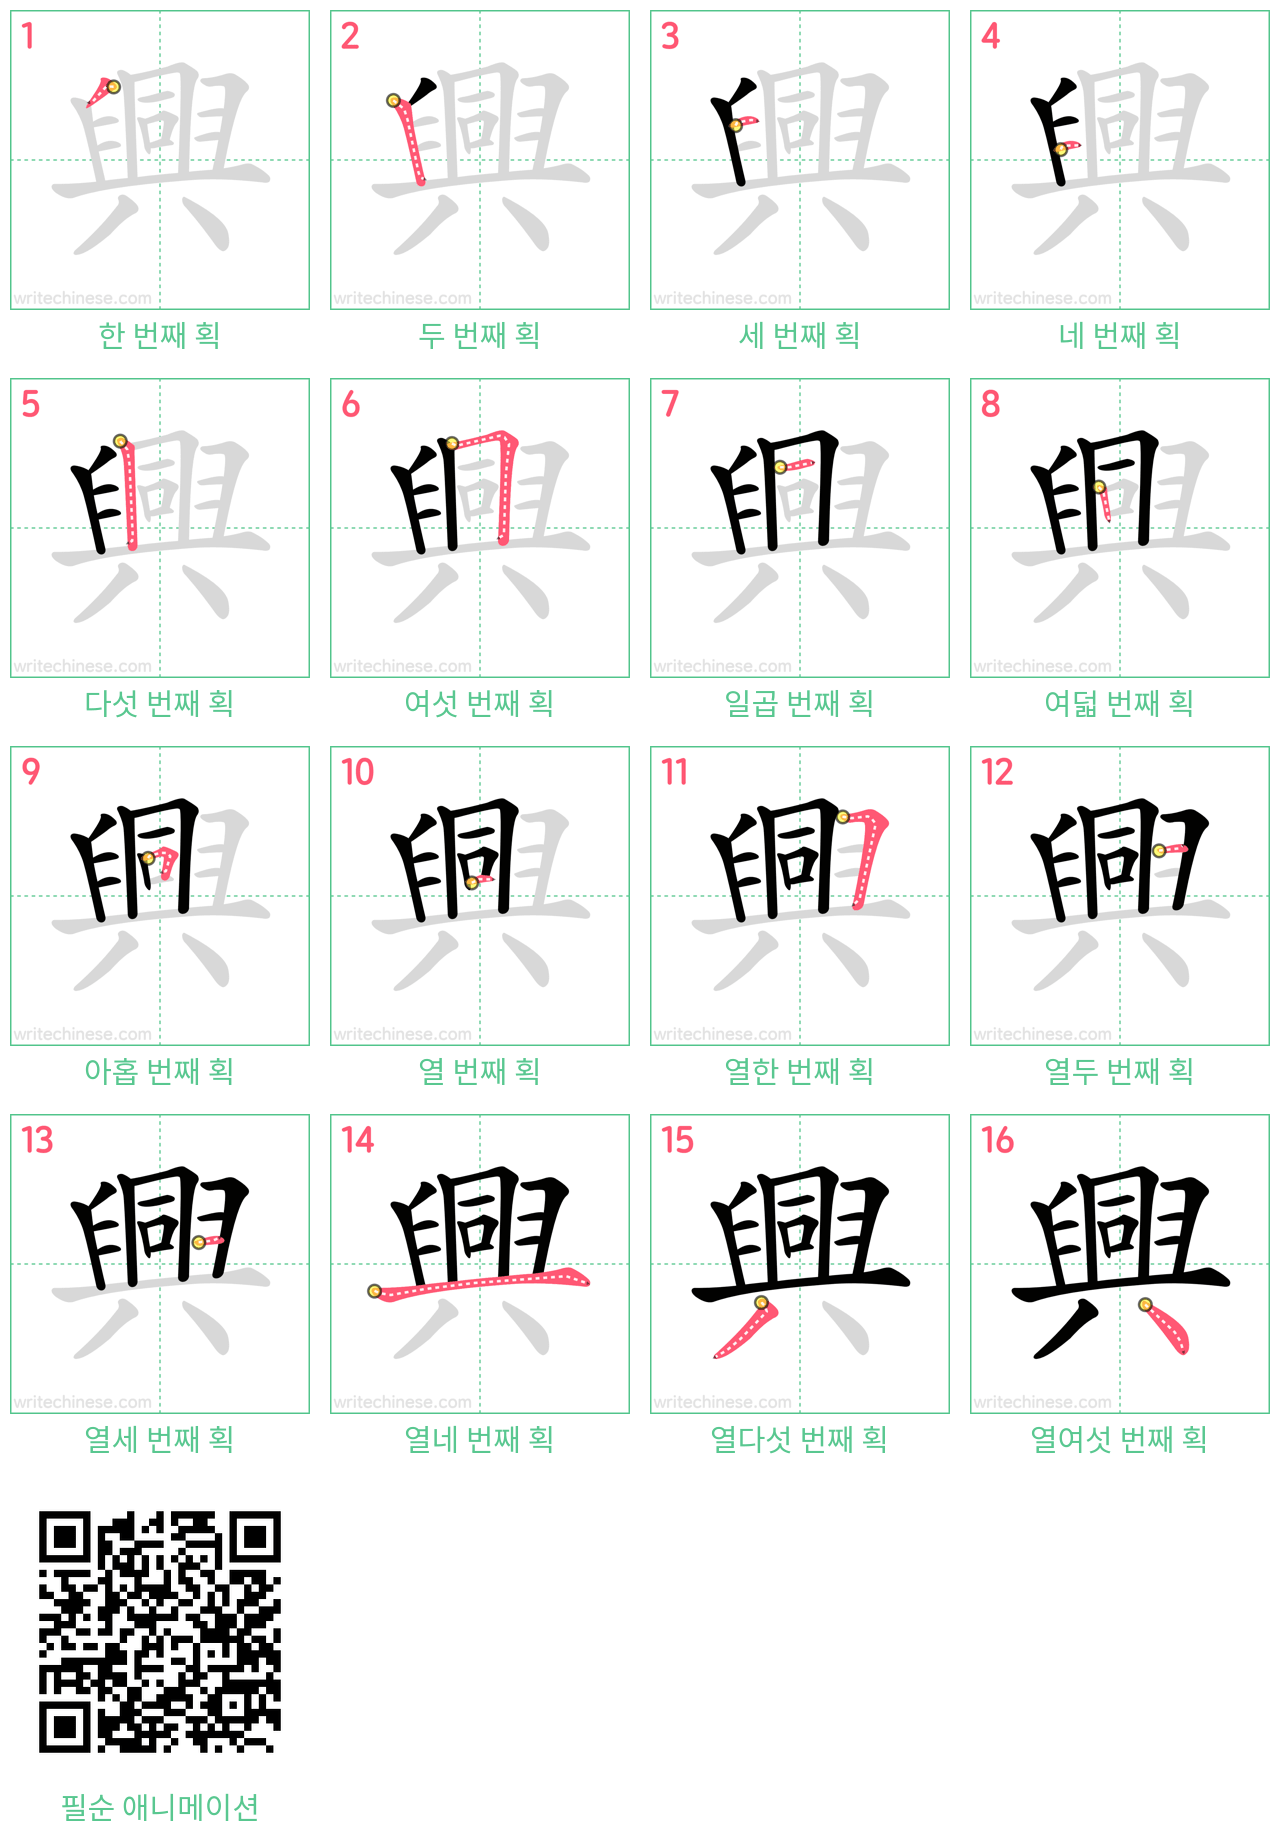 興 step-by-step stroke order diagrams